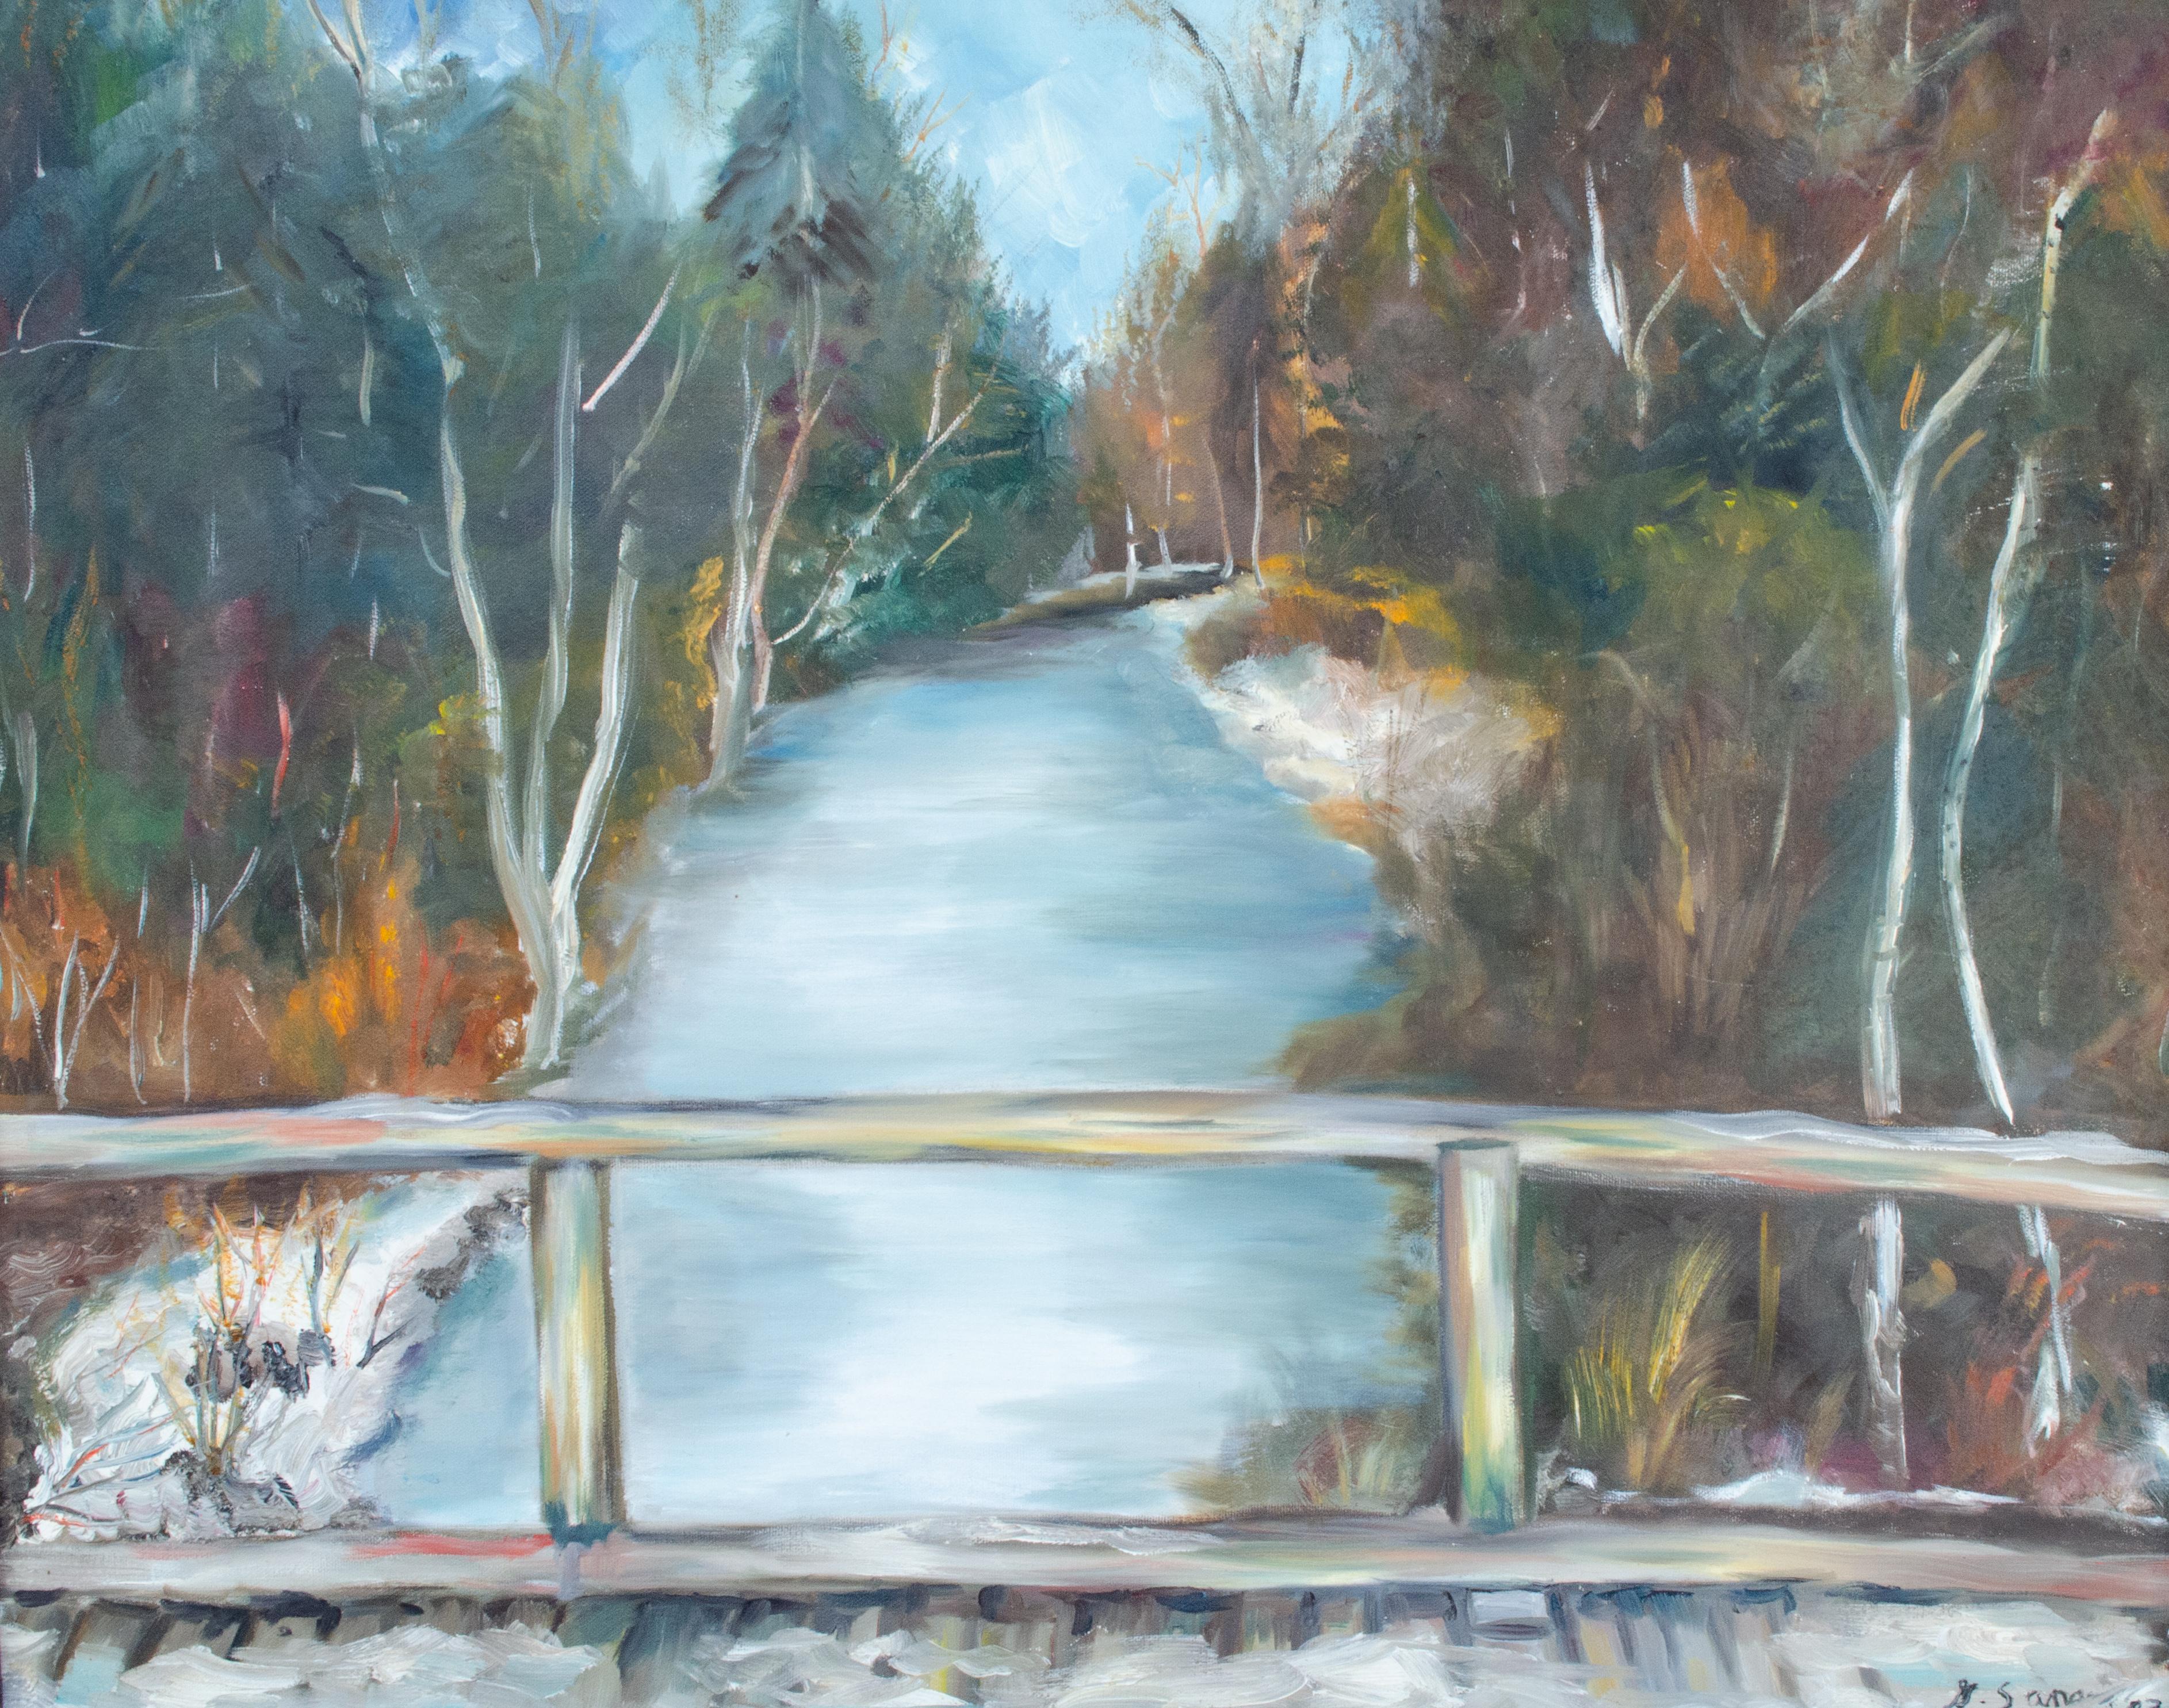 1983 Amerikanisch-impressionistische Flusslandschaft von Geraldine Sanger – Painting von Unknown